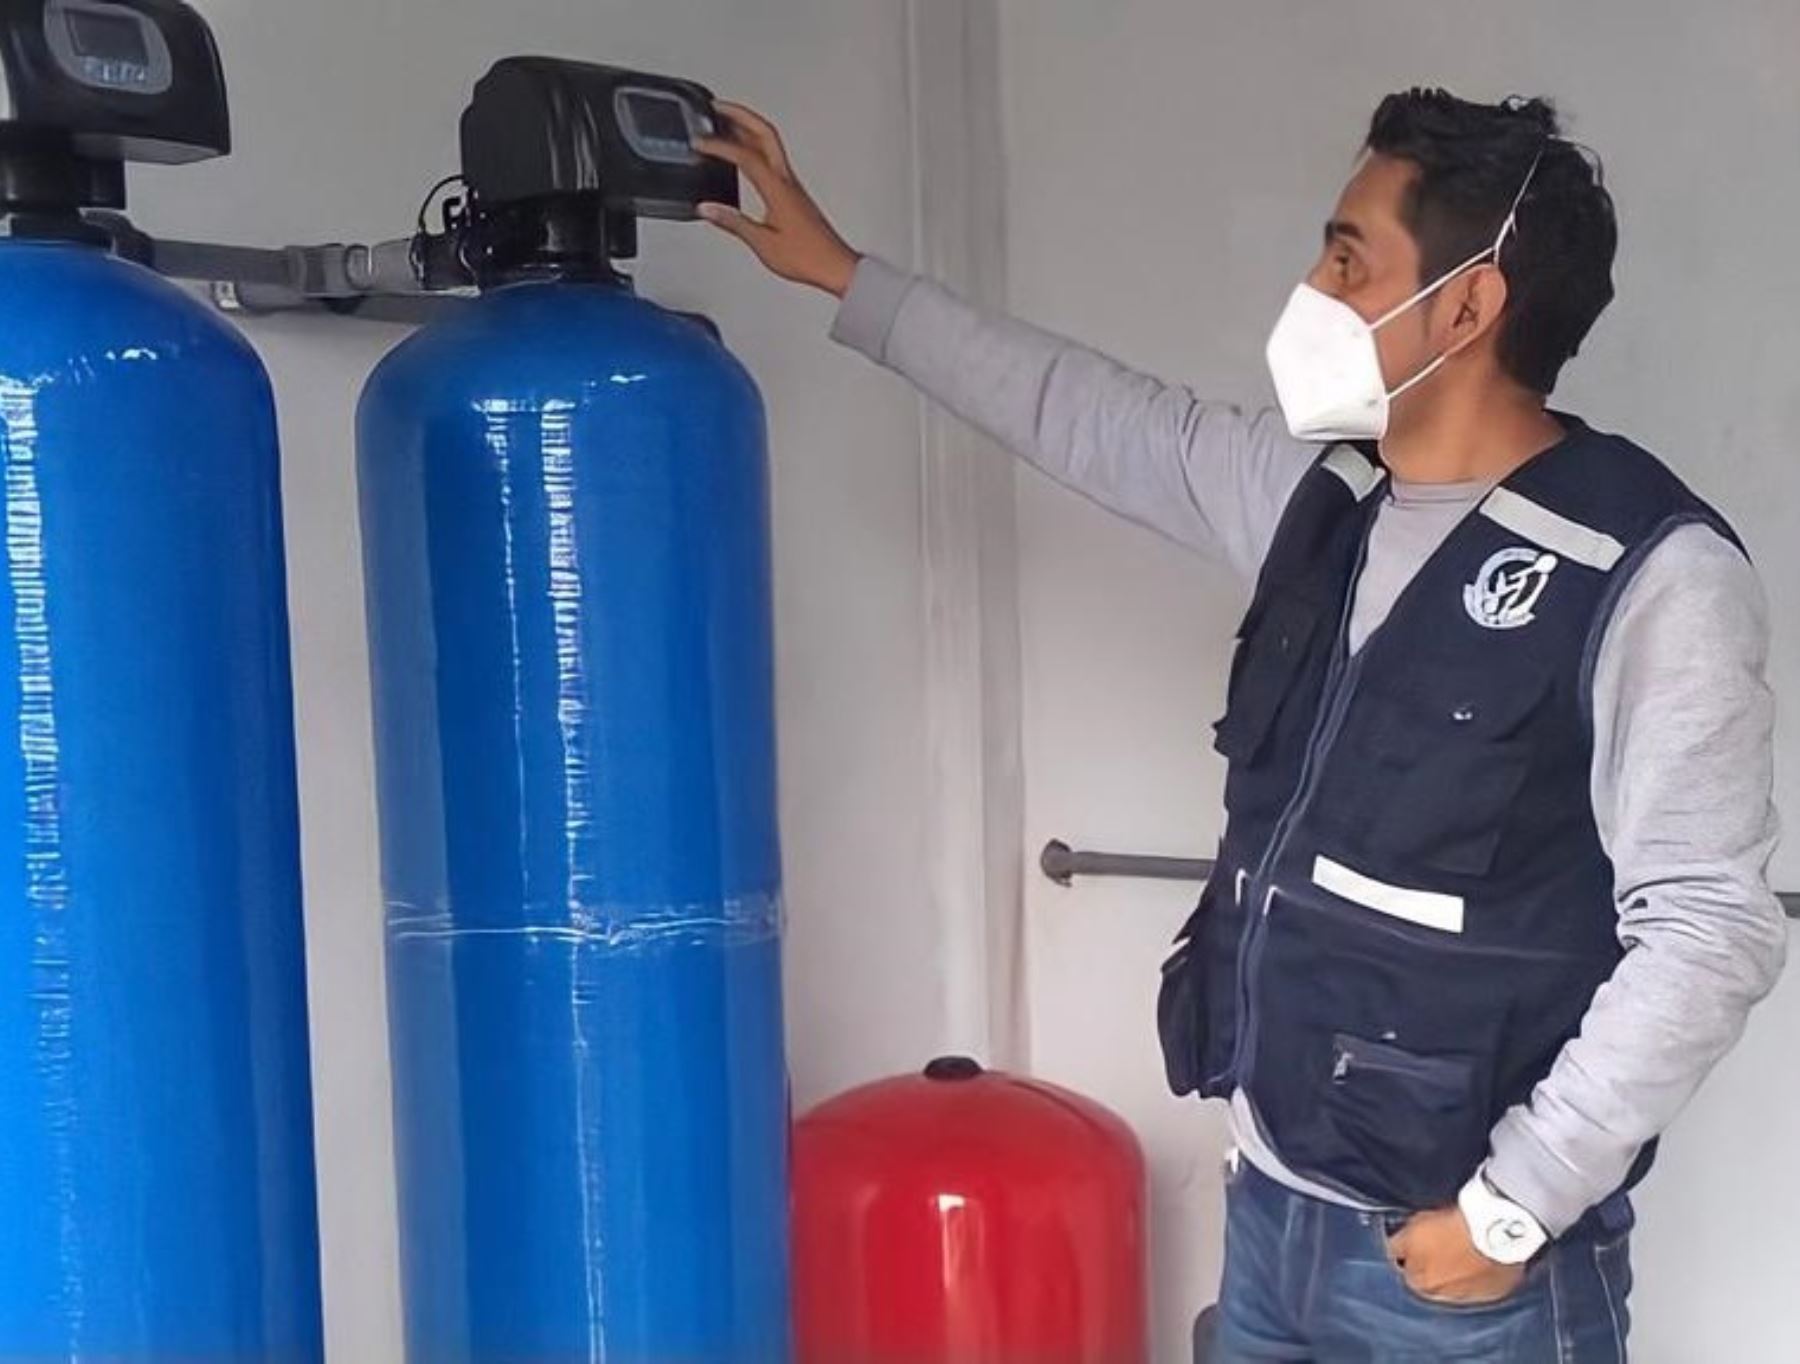 Investigadores del Instituto Nacional de Salud implementaron un novedoso sistema piloto que elimina el arsénico y otros metales pesados del agua de consumo humano de la provincia de Pisco, región Ica. Foto: ANDINA/difusión.